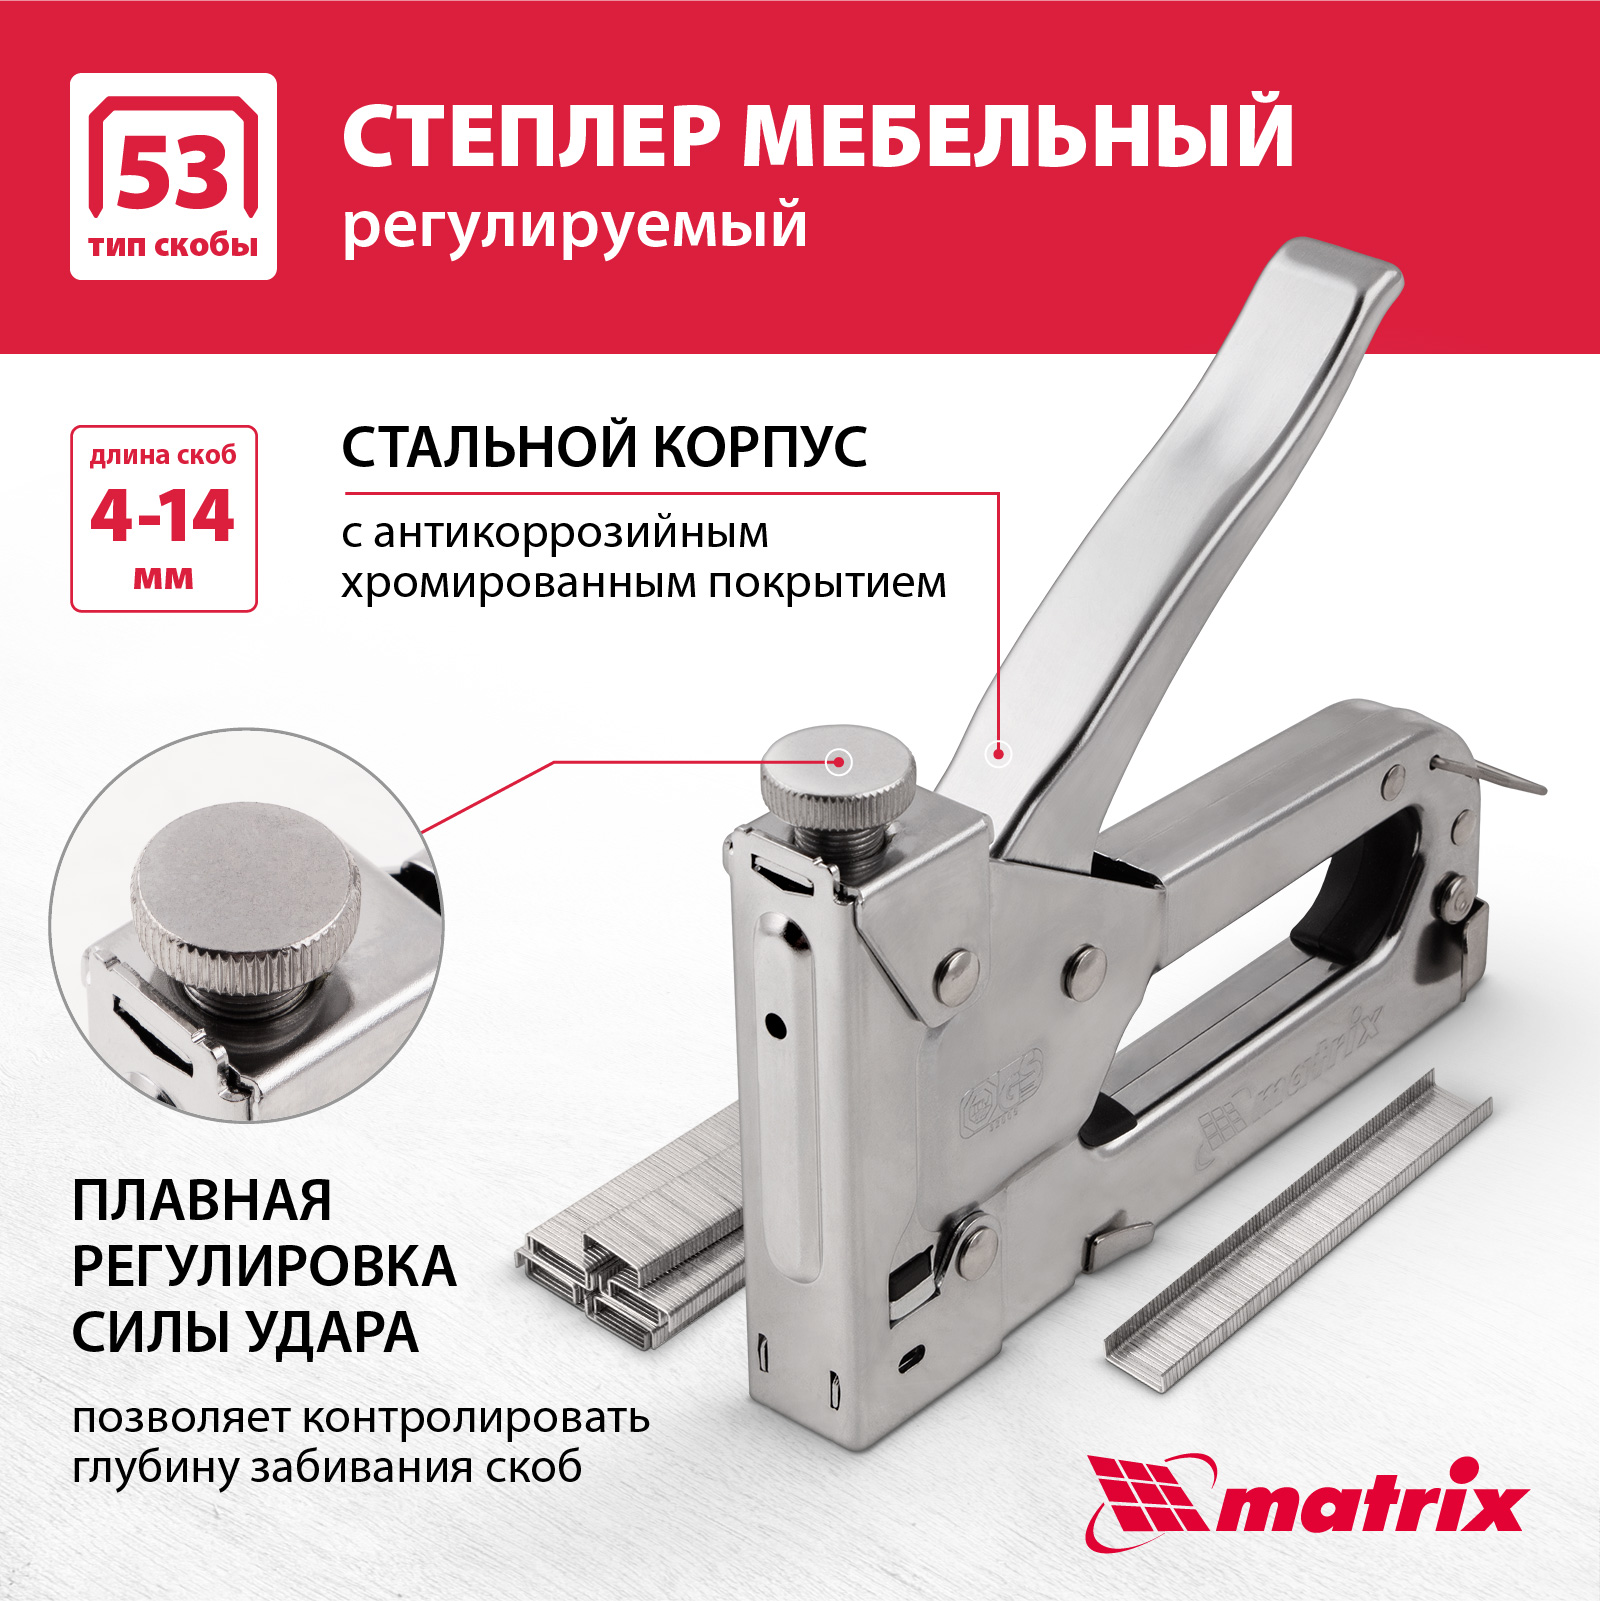 Степлер мебельный регулируемый MATRIX 40902 тип скобы 53, 4-14 мм степлер механический matrix master тип скобы 53 4 14 мм 40902